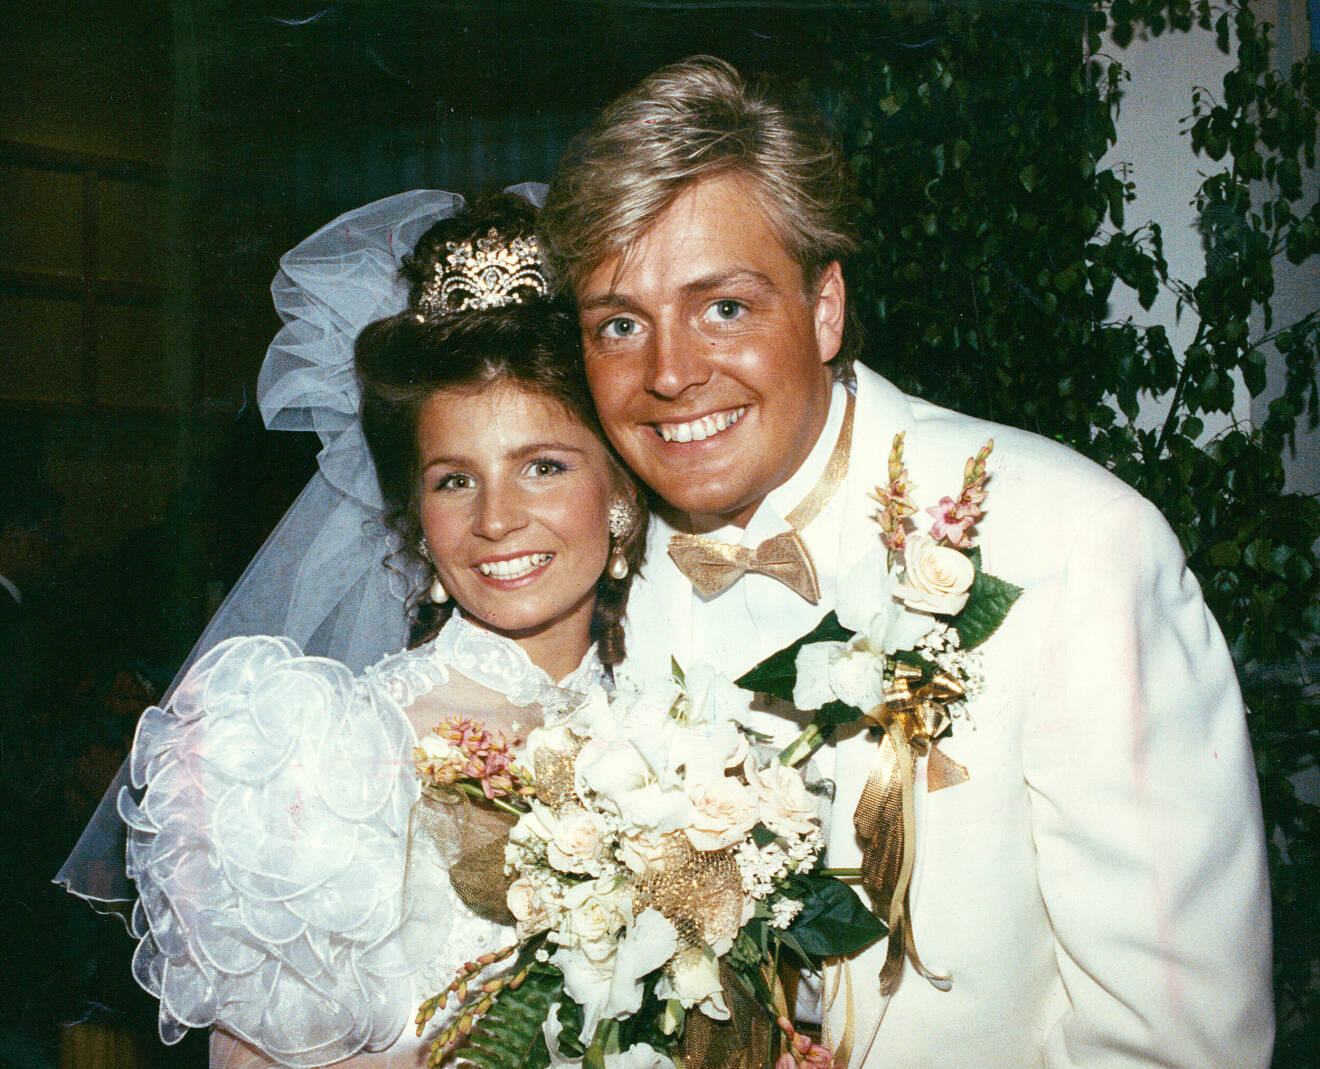 Carola och exmaken Runar på bröllopsdagen år 1990.